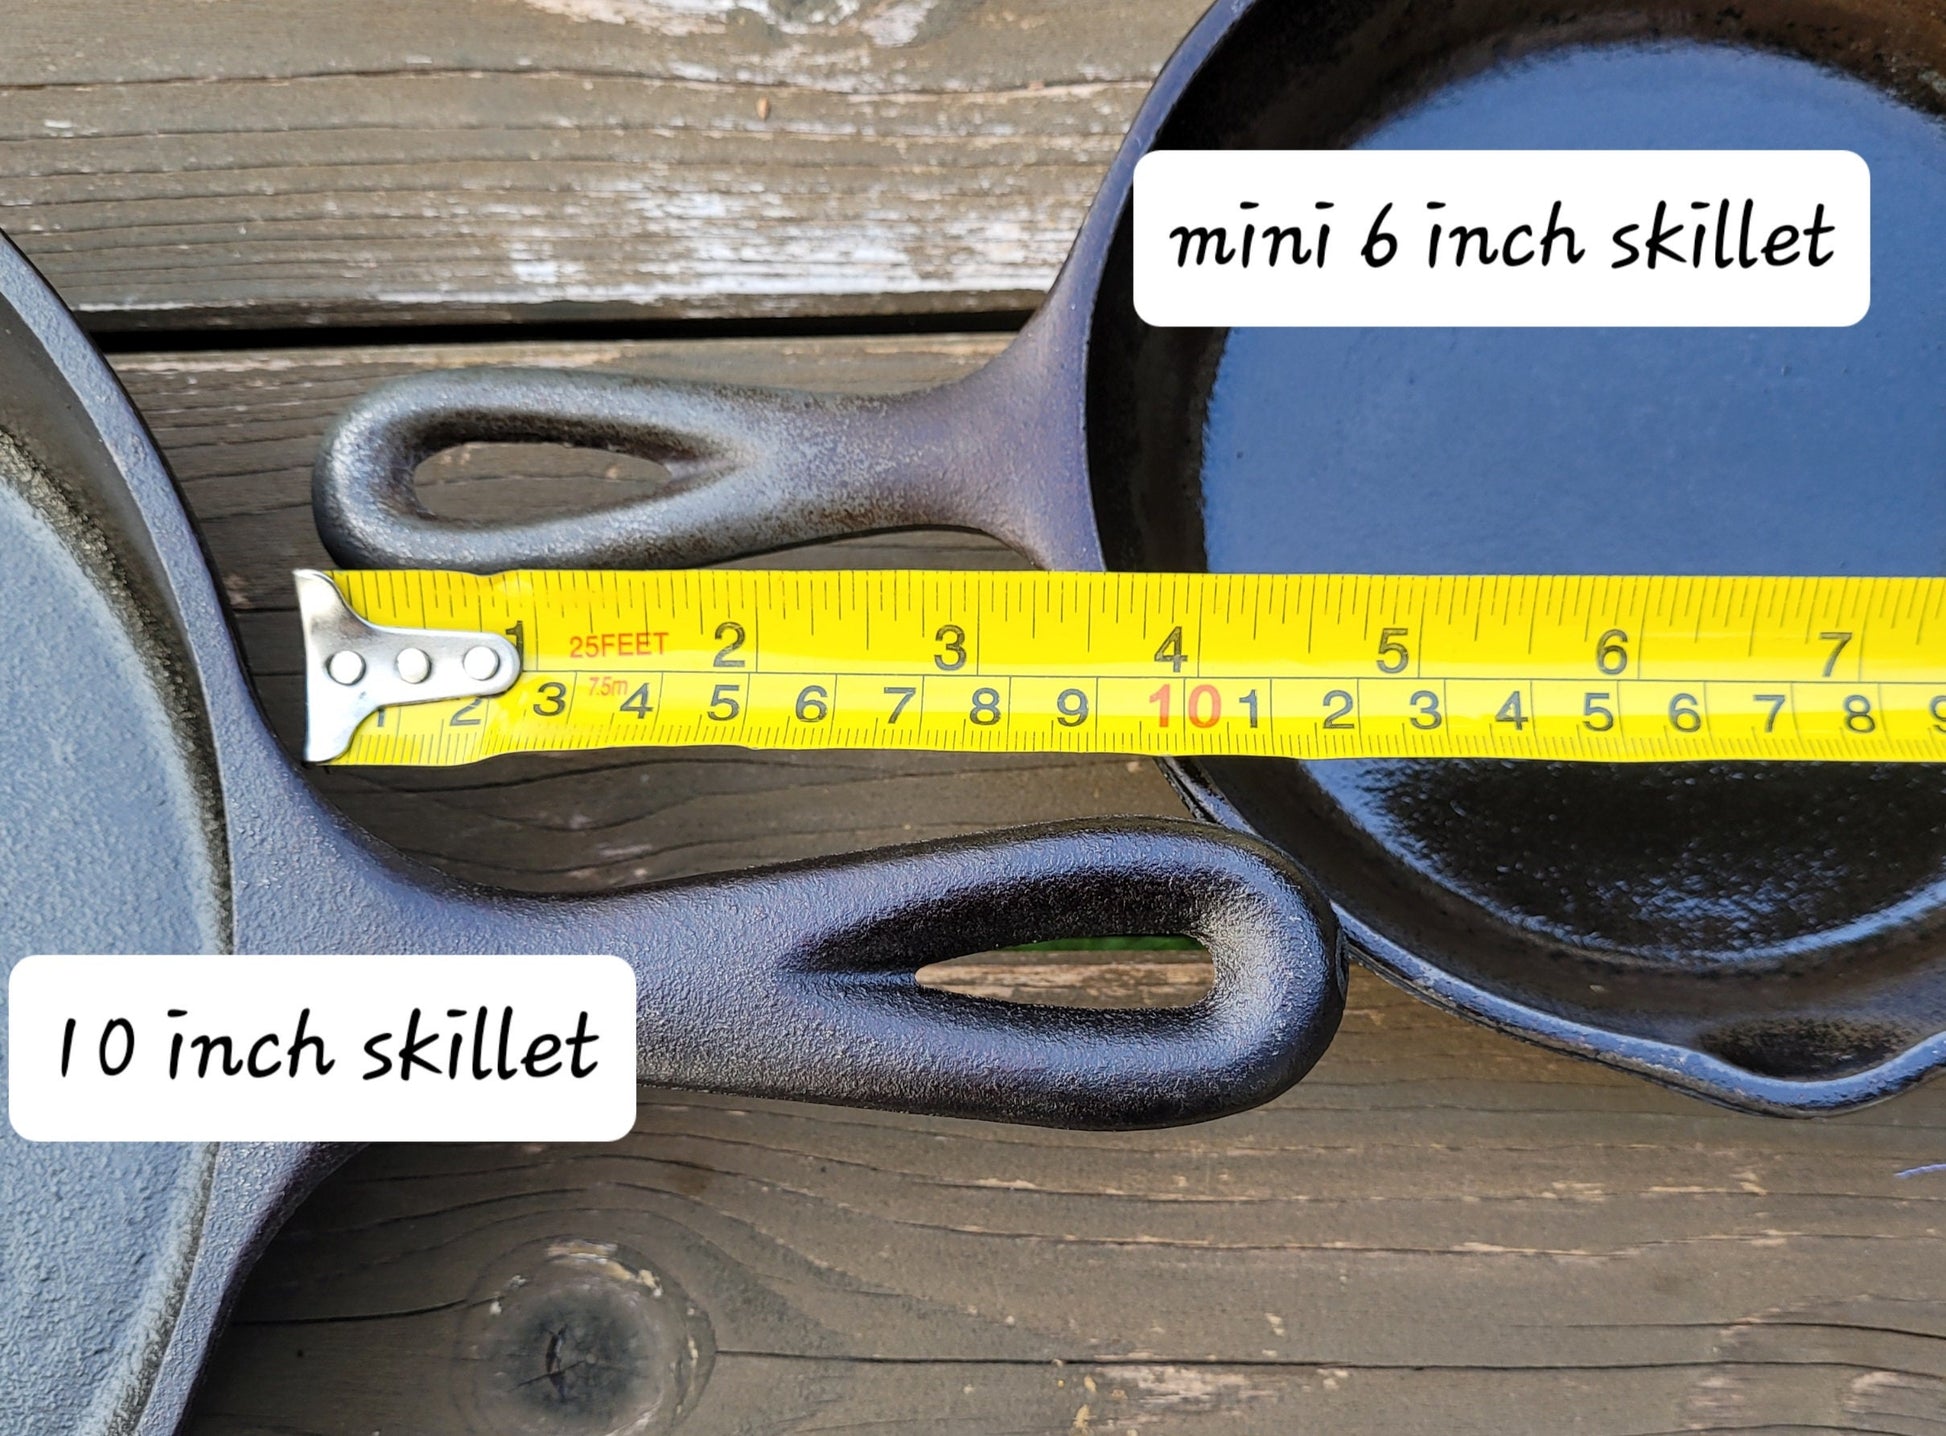 cast iron skillet handle measurements